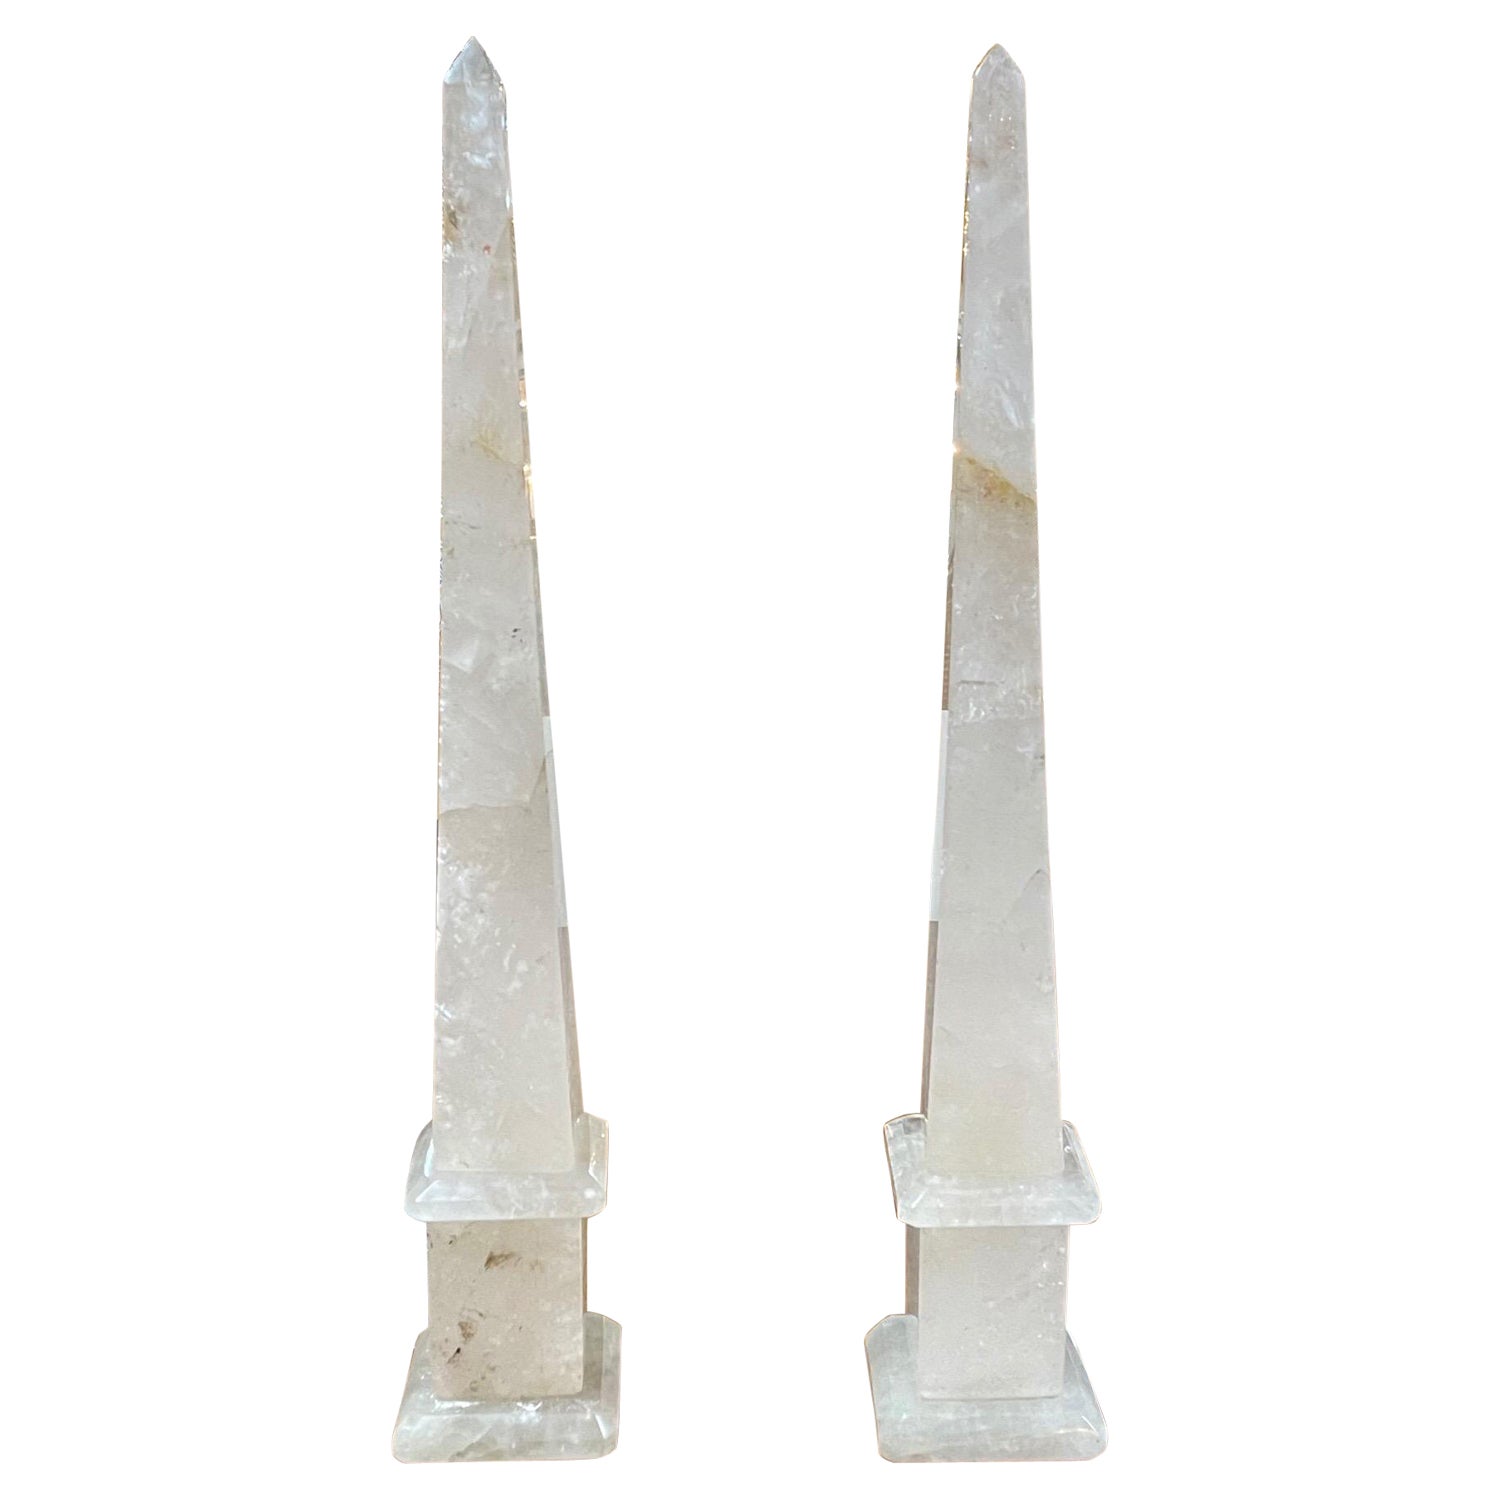 Pair of Polished Rock Crystal Obelisks from Brazil